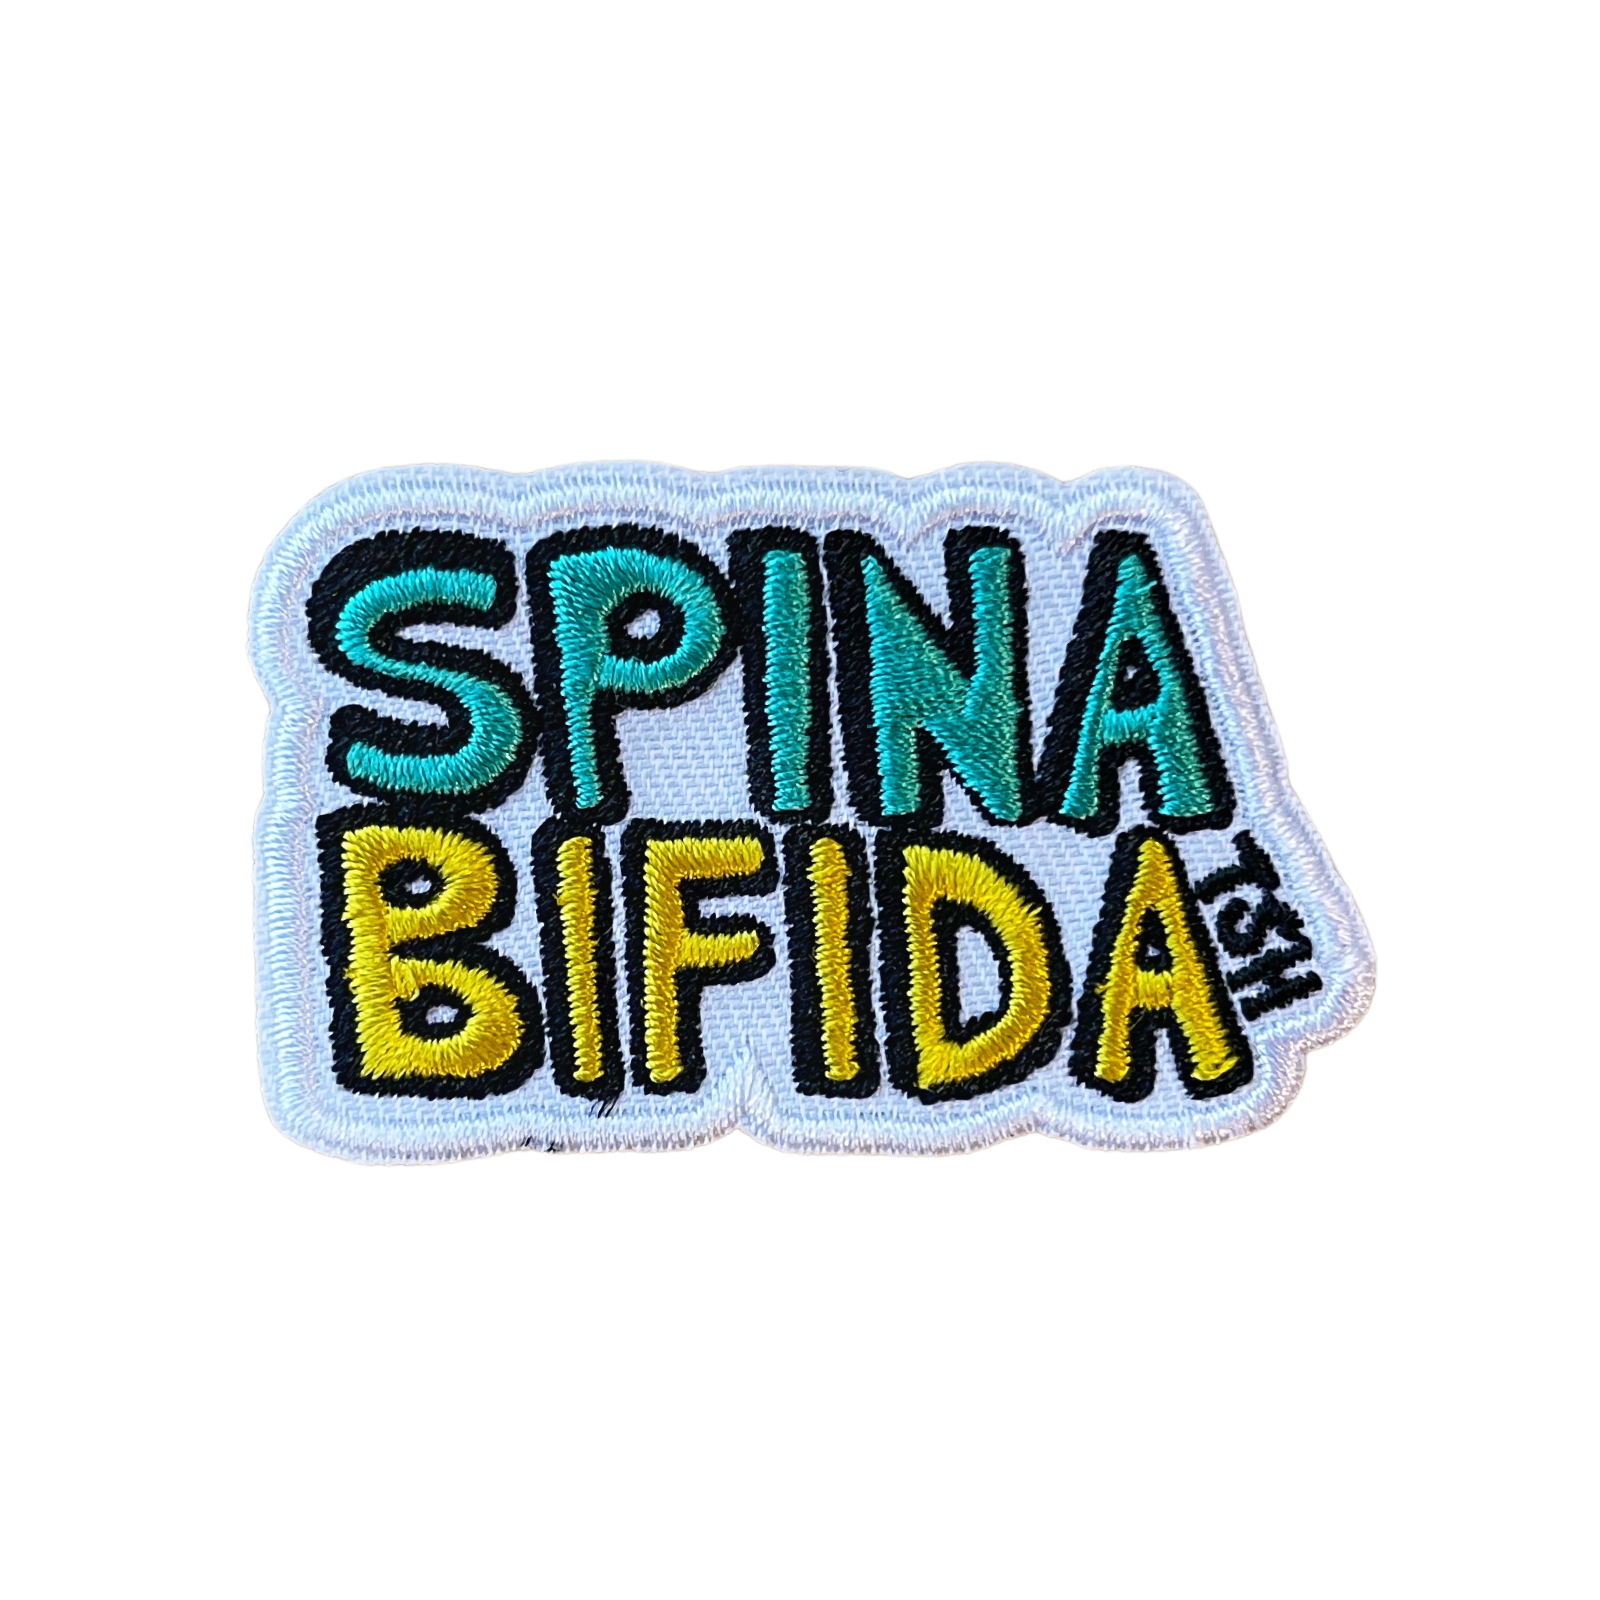 Spina Bifida Patch - TinySuperheroes